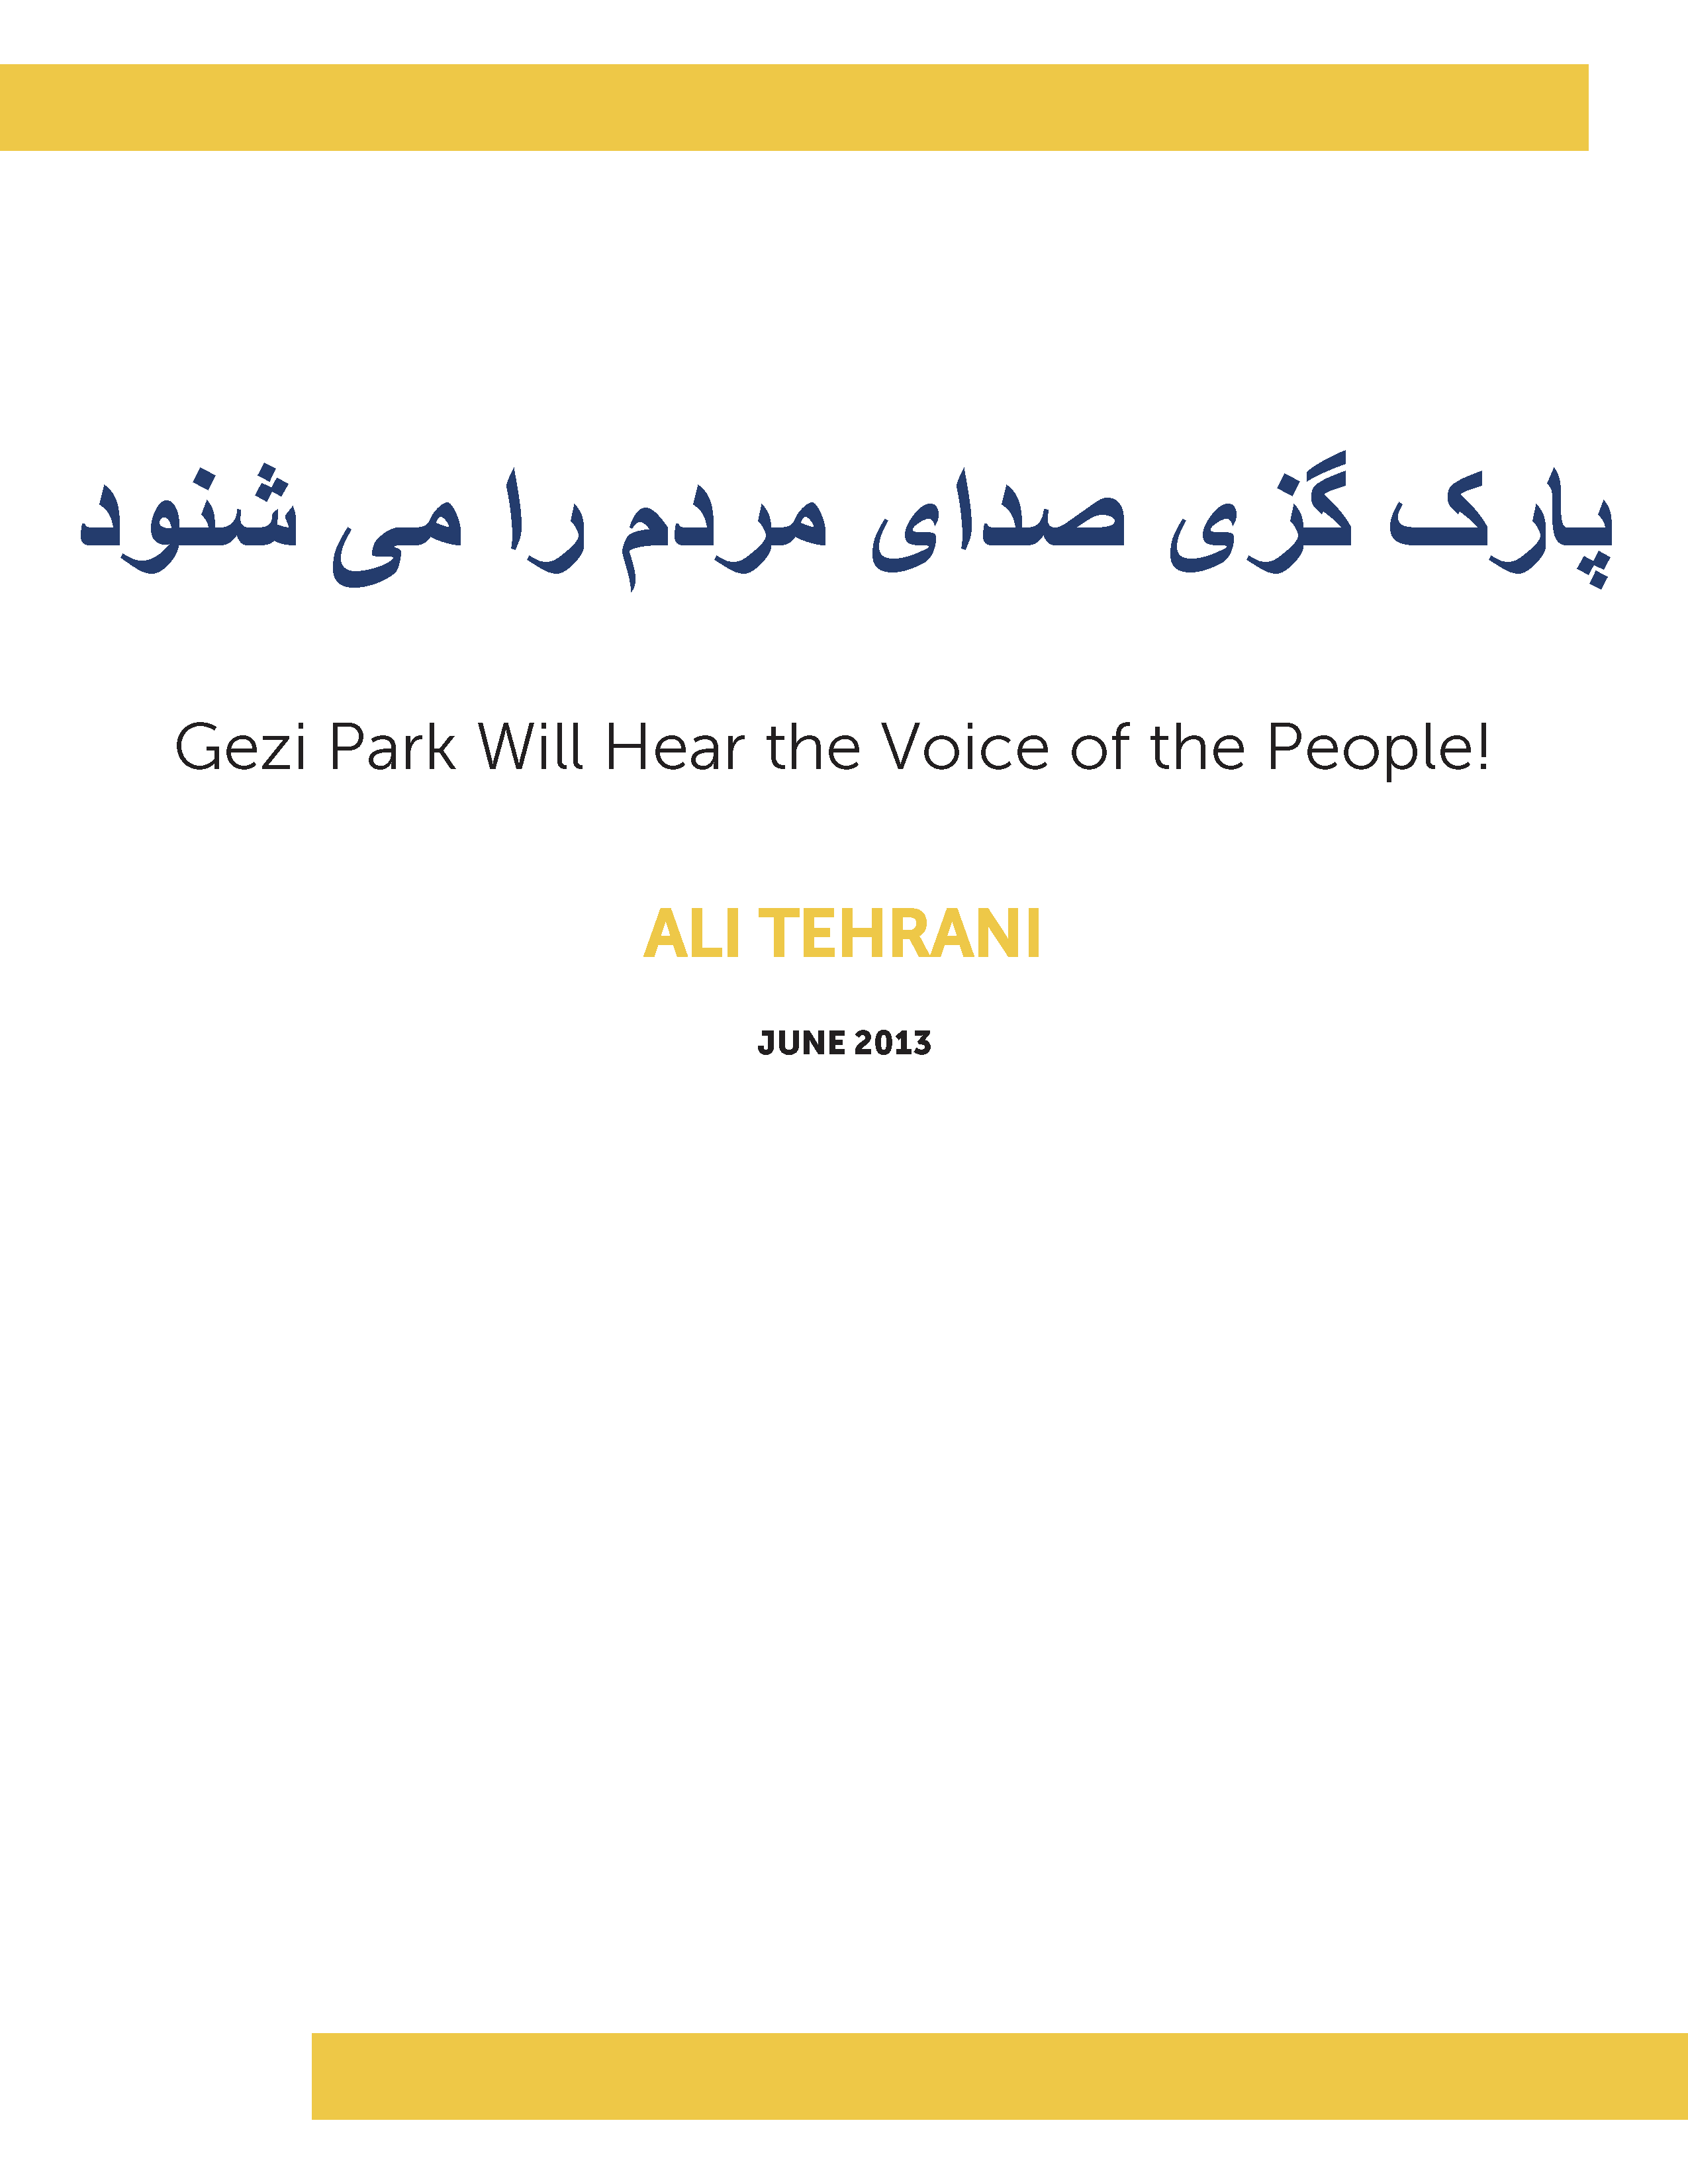 پارک گزی صدای مردم را می شنود